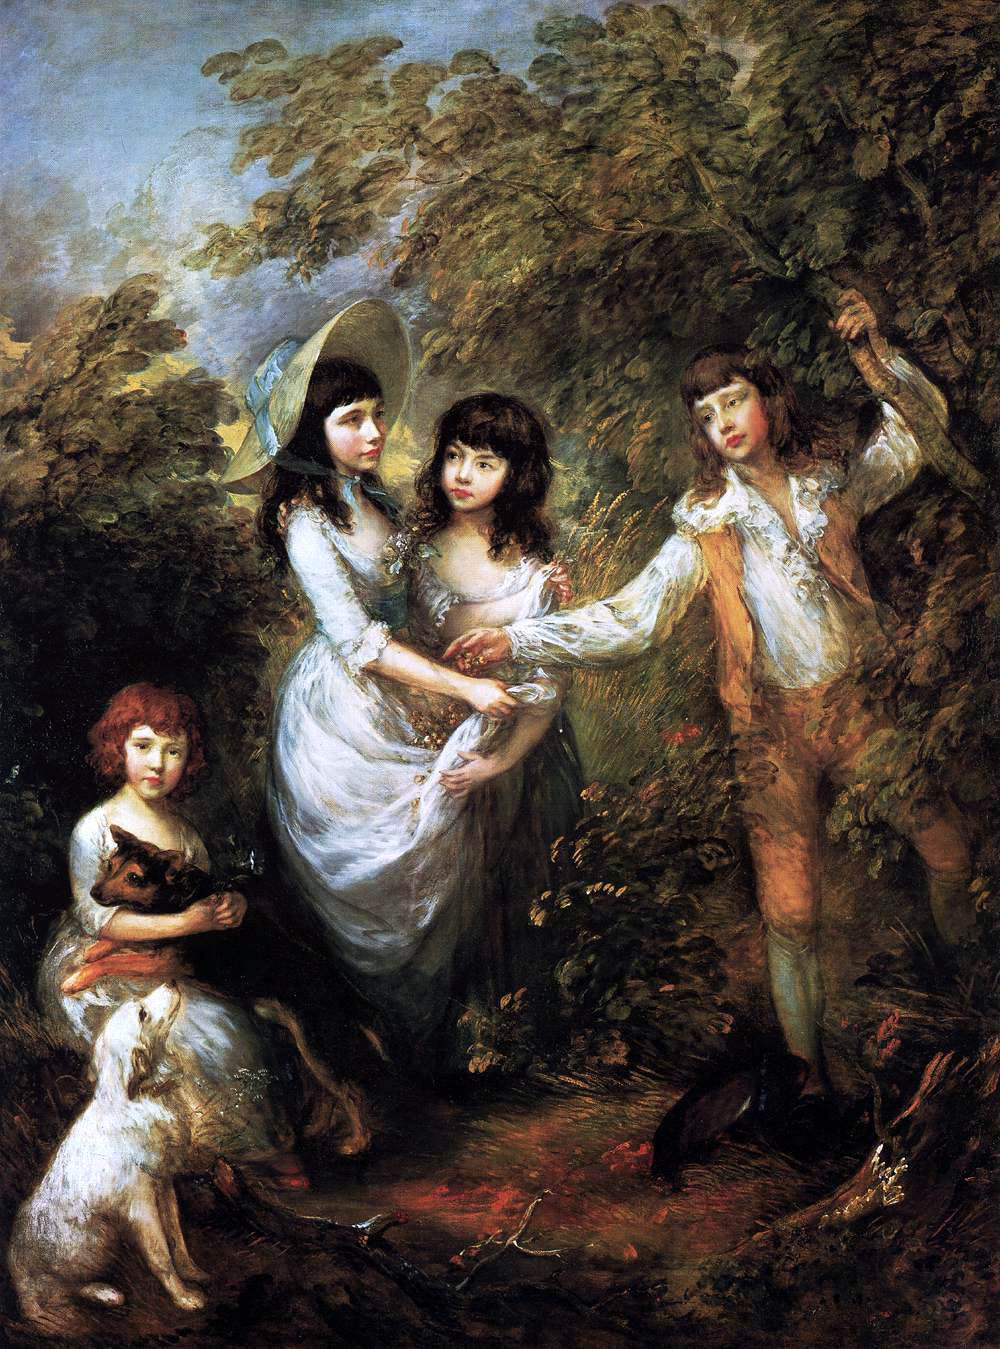  Thomas Gainsborough The Marsham Children - Hand Painted Oil Painting